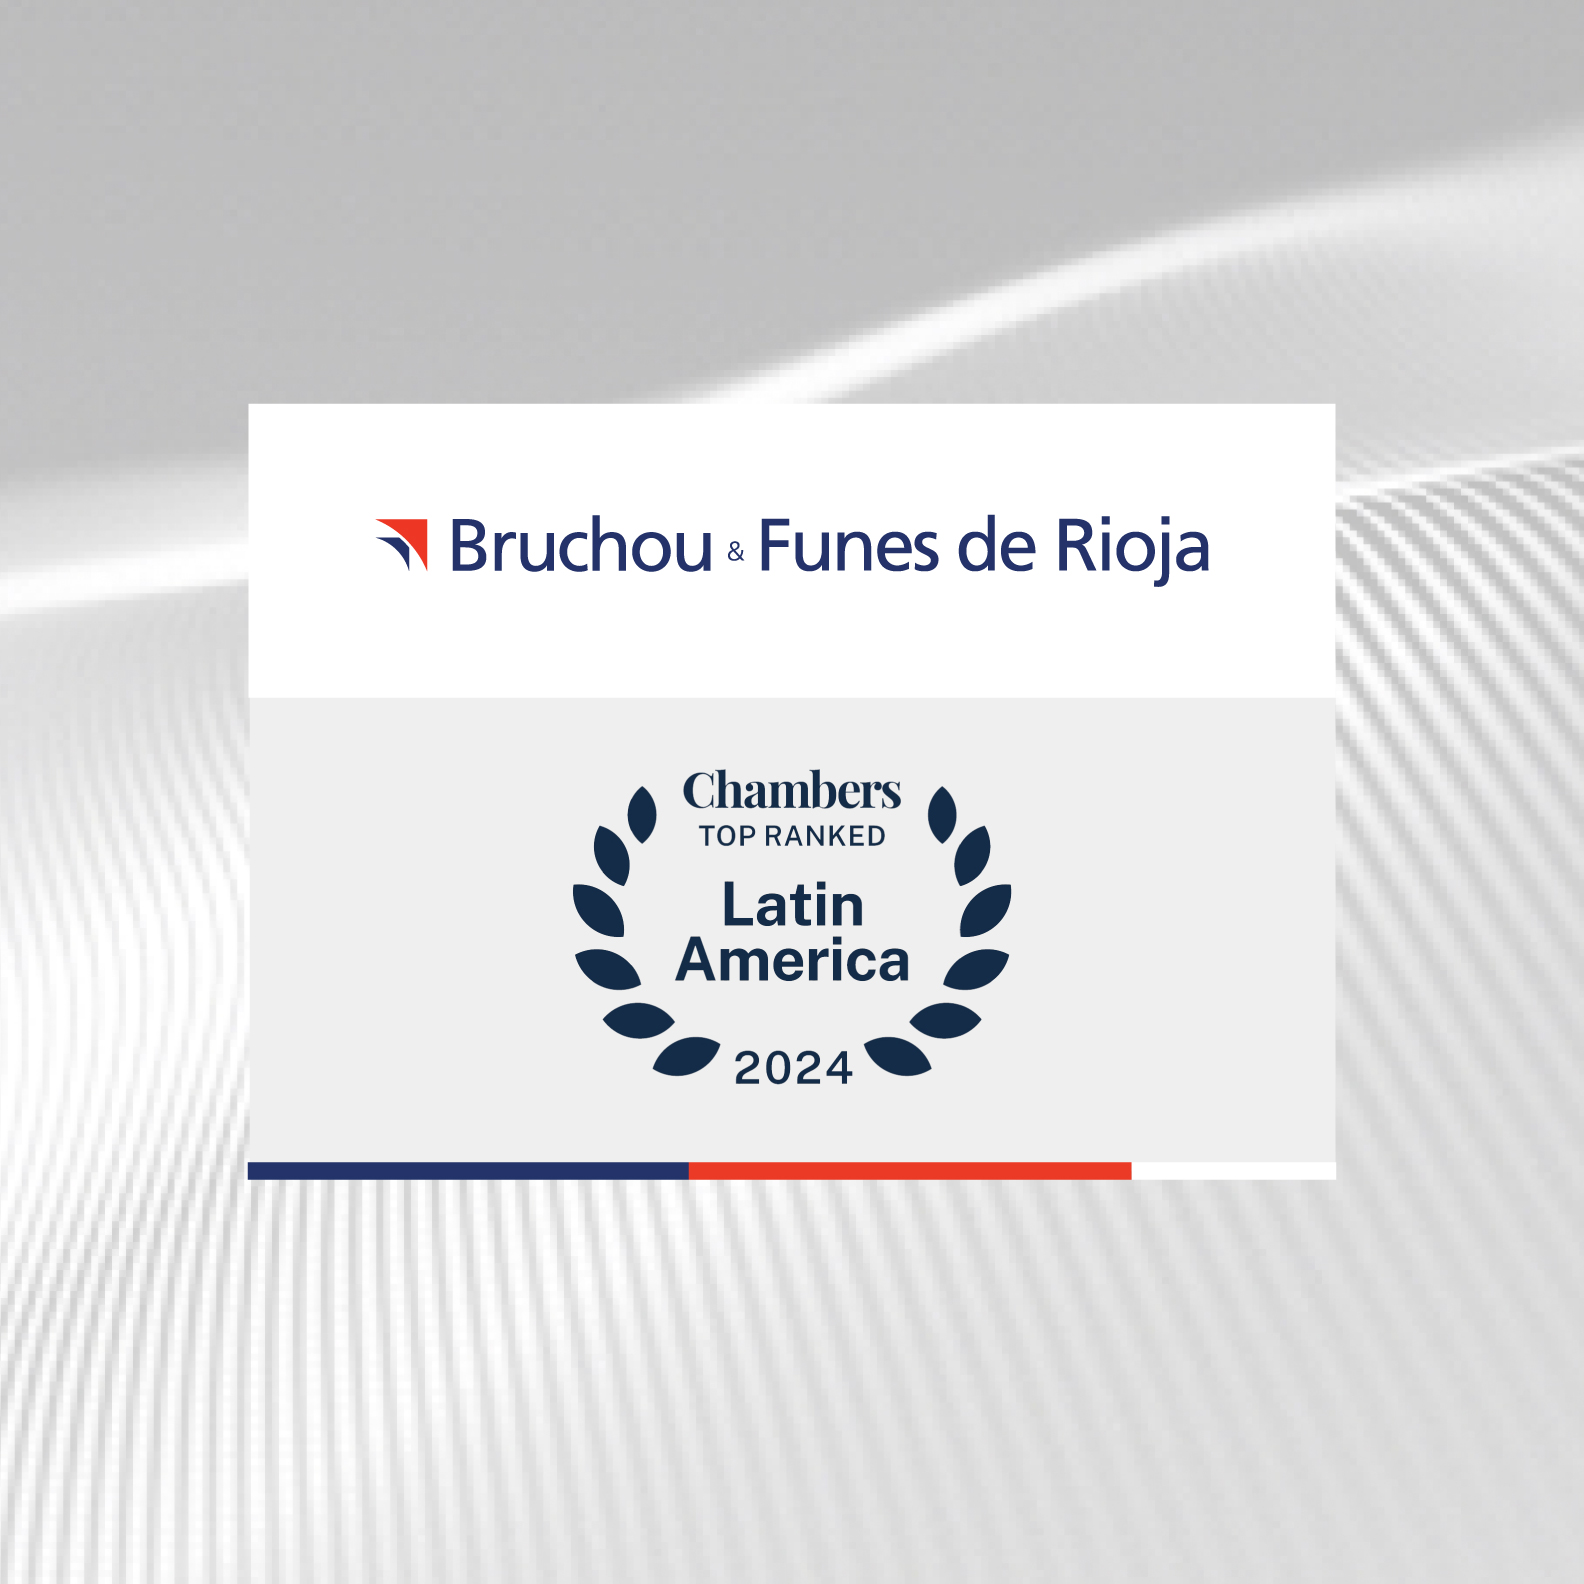 Bruchou & Funes de Rioja reconocida como firma Top Ranked y líder por la Guía Chambers Latin America 2024